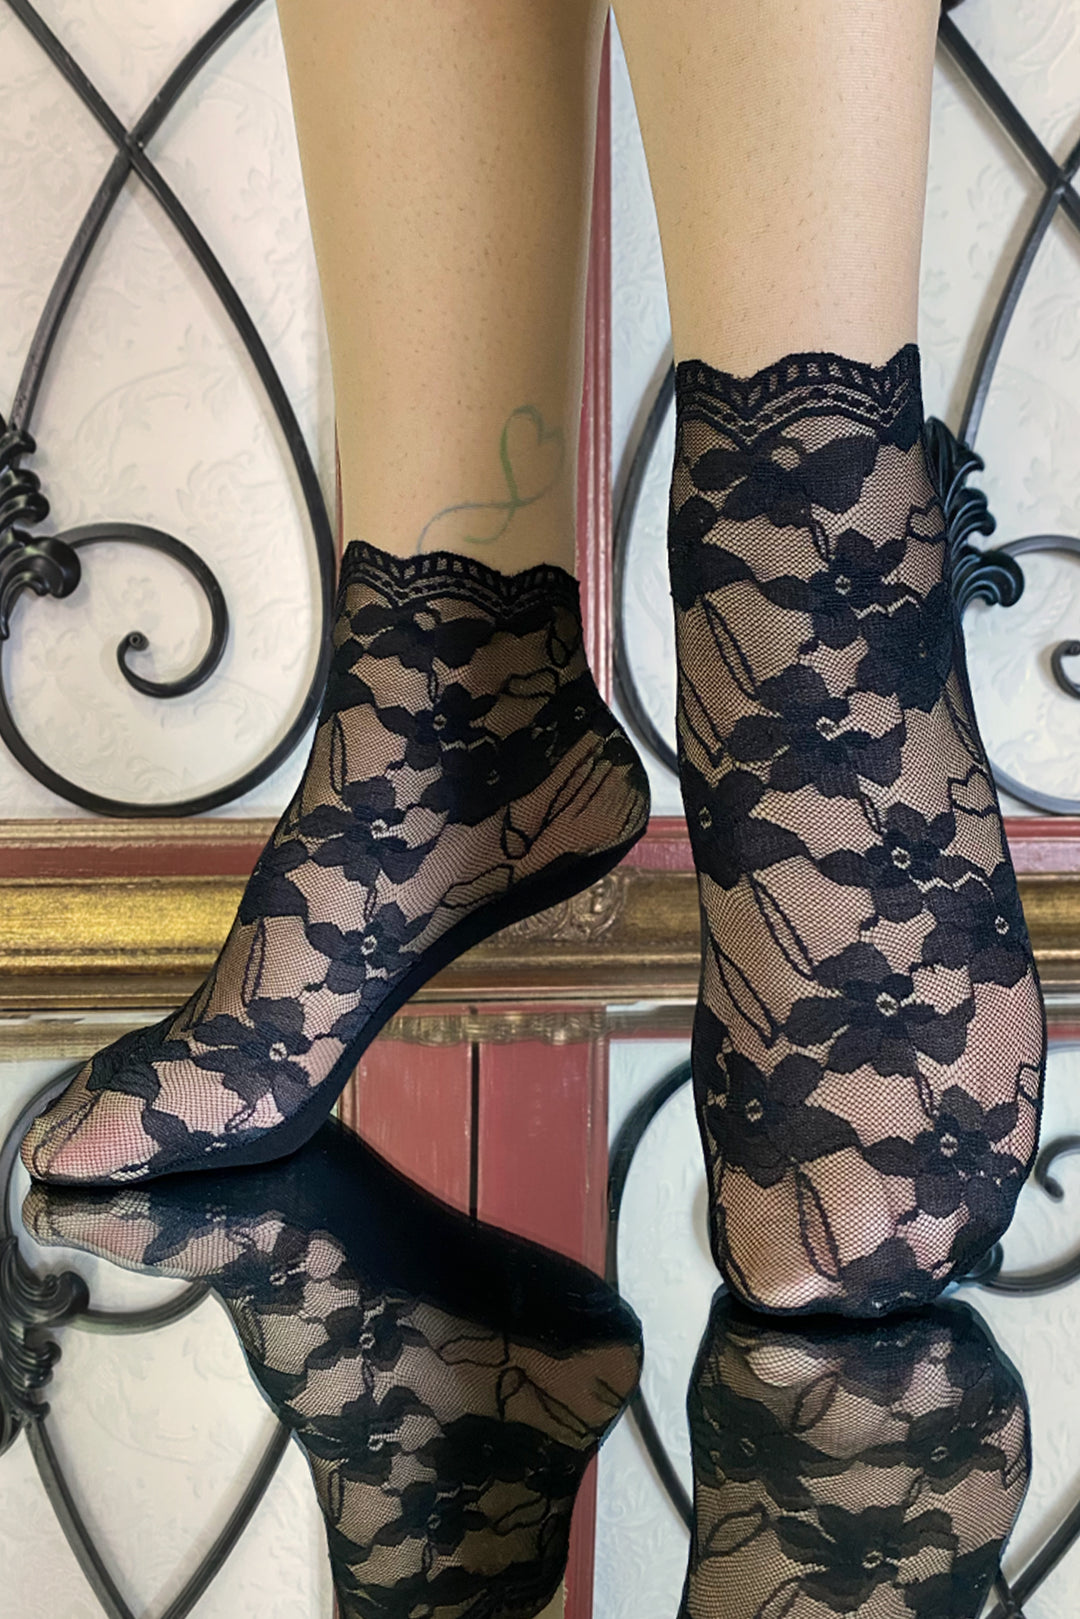 D'Amour Floral Lace Ankle Socks (Black) – Kitten D'Amour